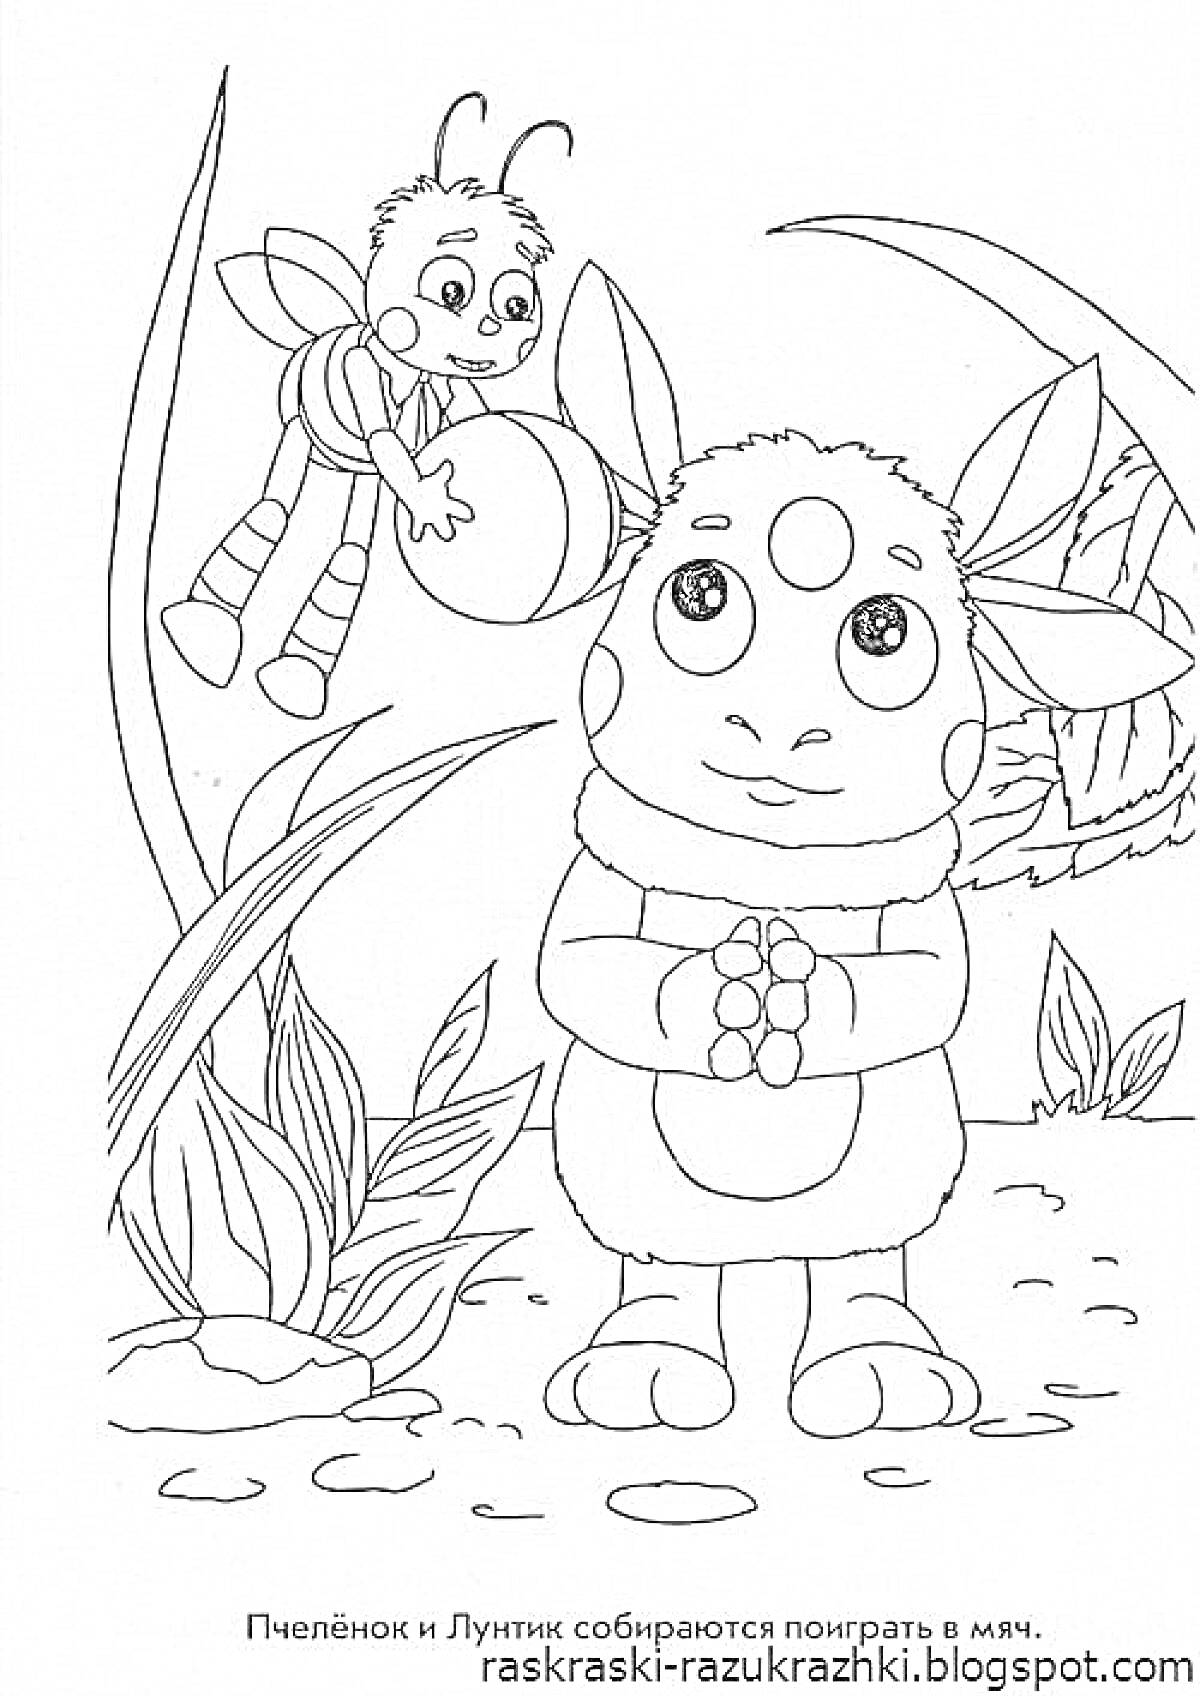 Раскраска Пчелёнок и Лунтик собираются поиграть в мяч. На переднем плане изображён Лунтик, держащий руки перед собой. Рядом с ним Пчелёнок держит мяч. Вокруг персонажей изображены растения.